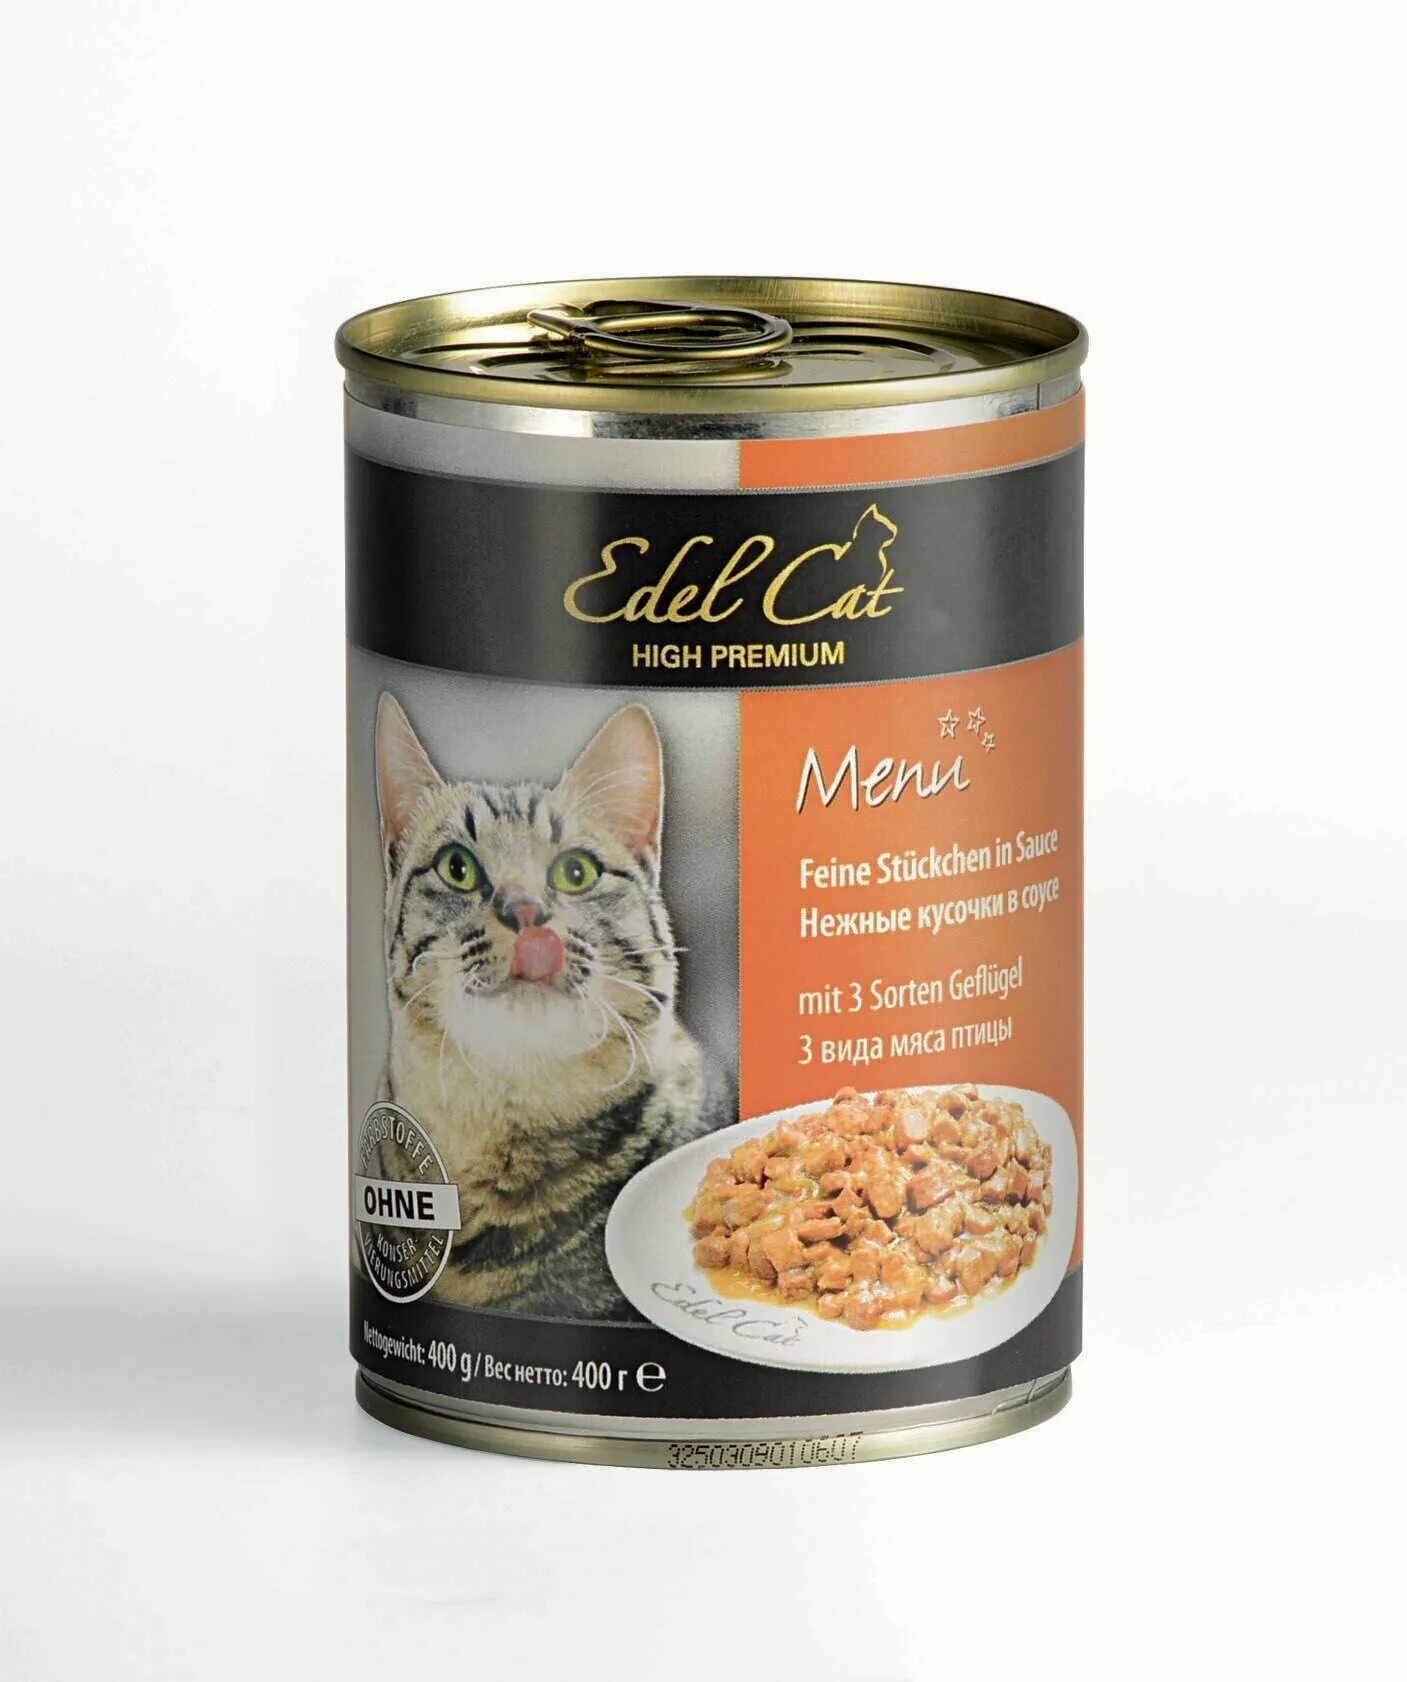 Купить влажный корм для кошек в спб. Влажный корм для кошек Эдель Кэт. Edel Cat для кошек влажный корм. Эдель Кэт консервы для кошек. Edel Cat нежные кусочки в соусе индейка печень 400г.